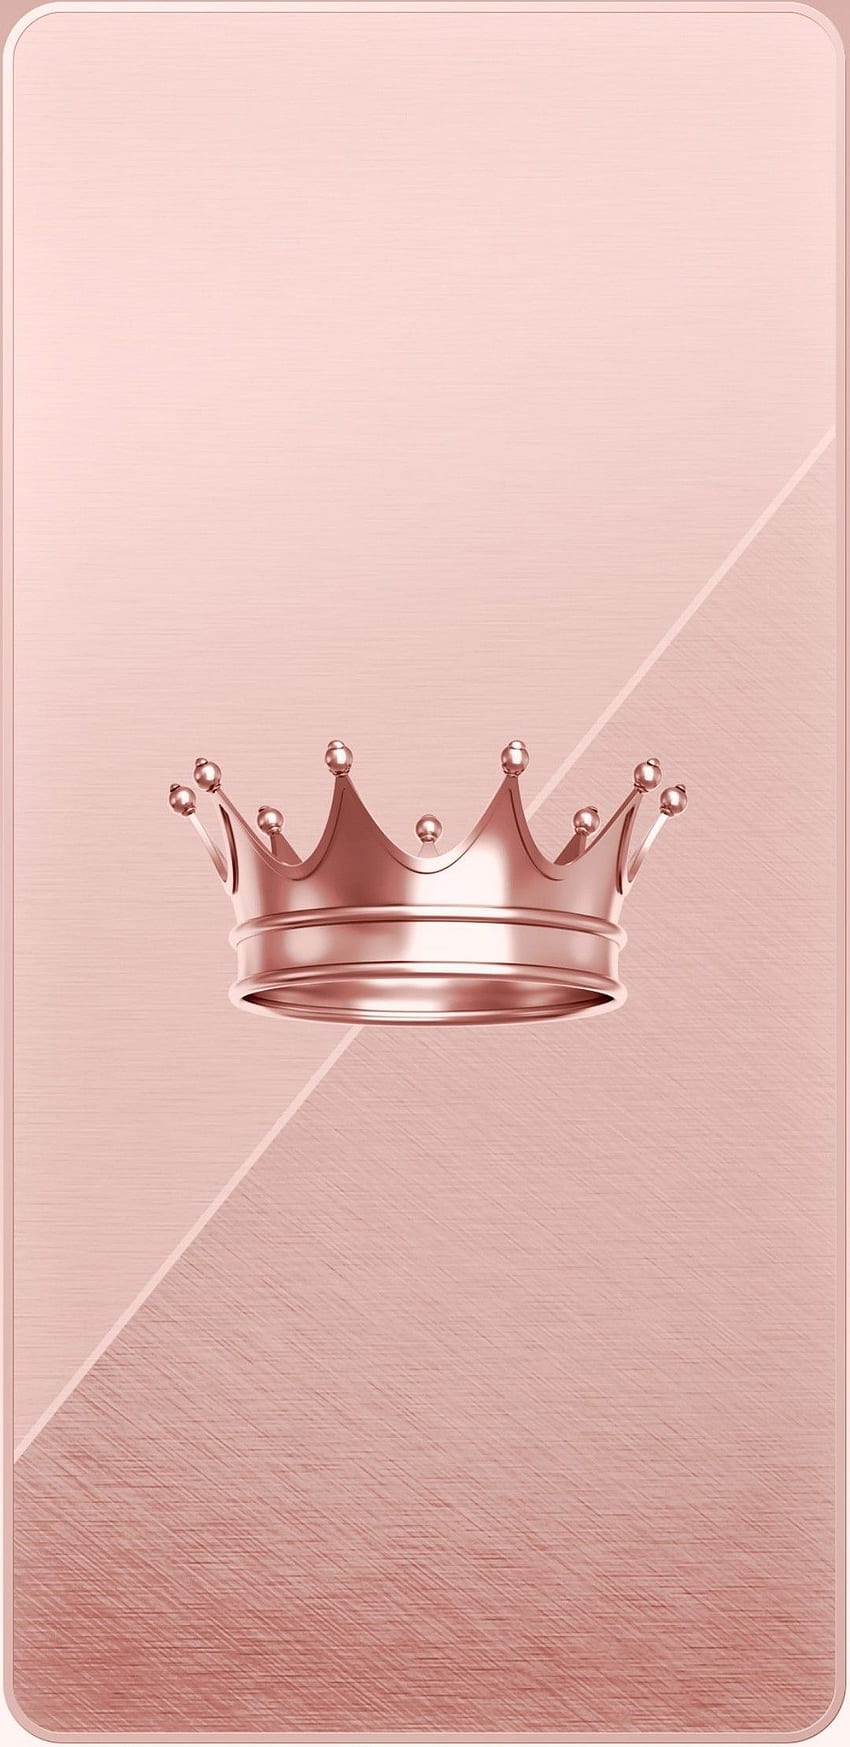 Krone iPhone, Königin Krone HD-Handy-Hintergrundbild